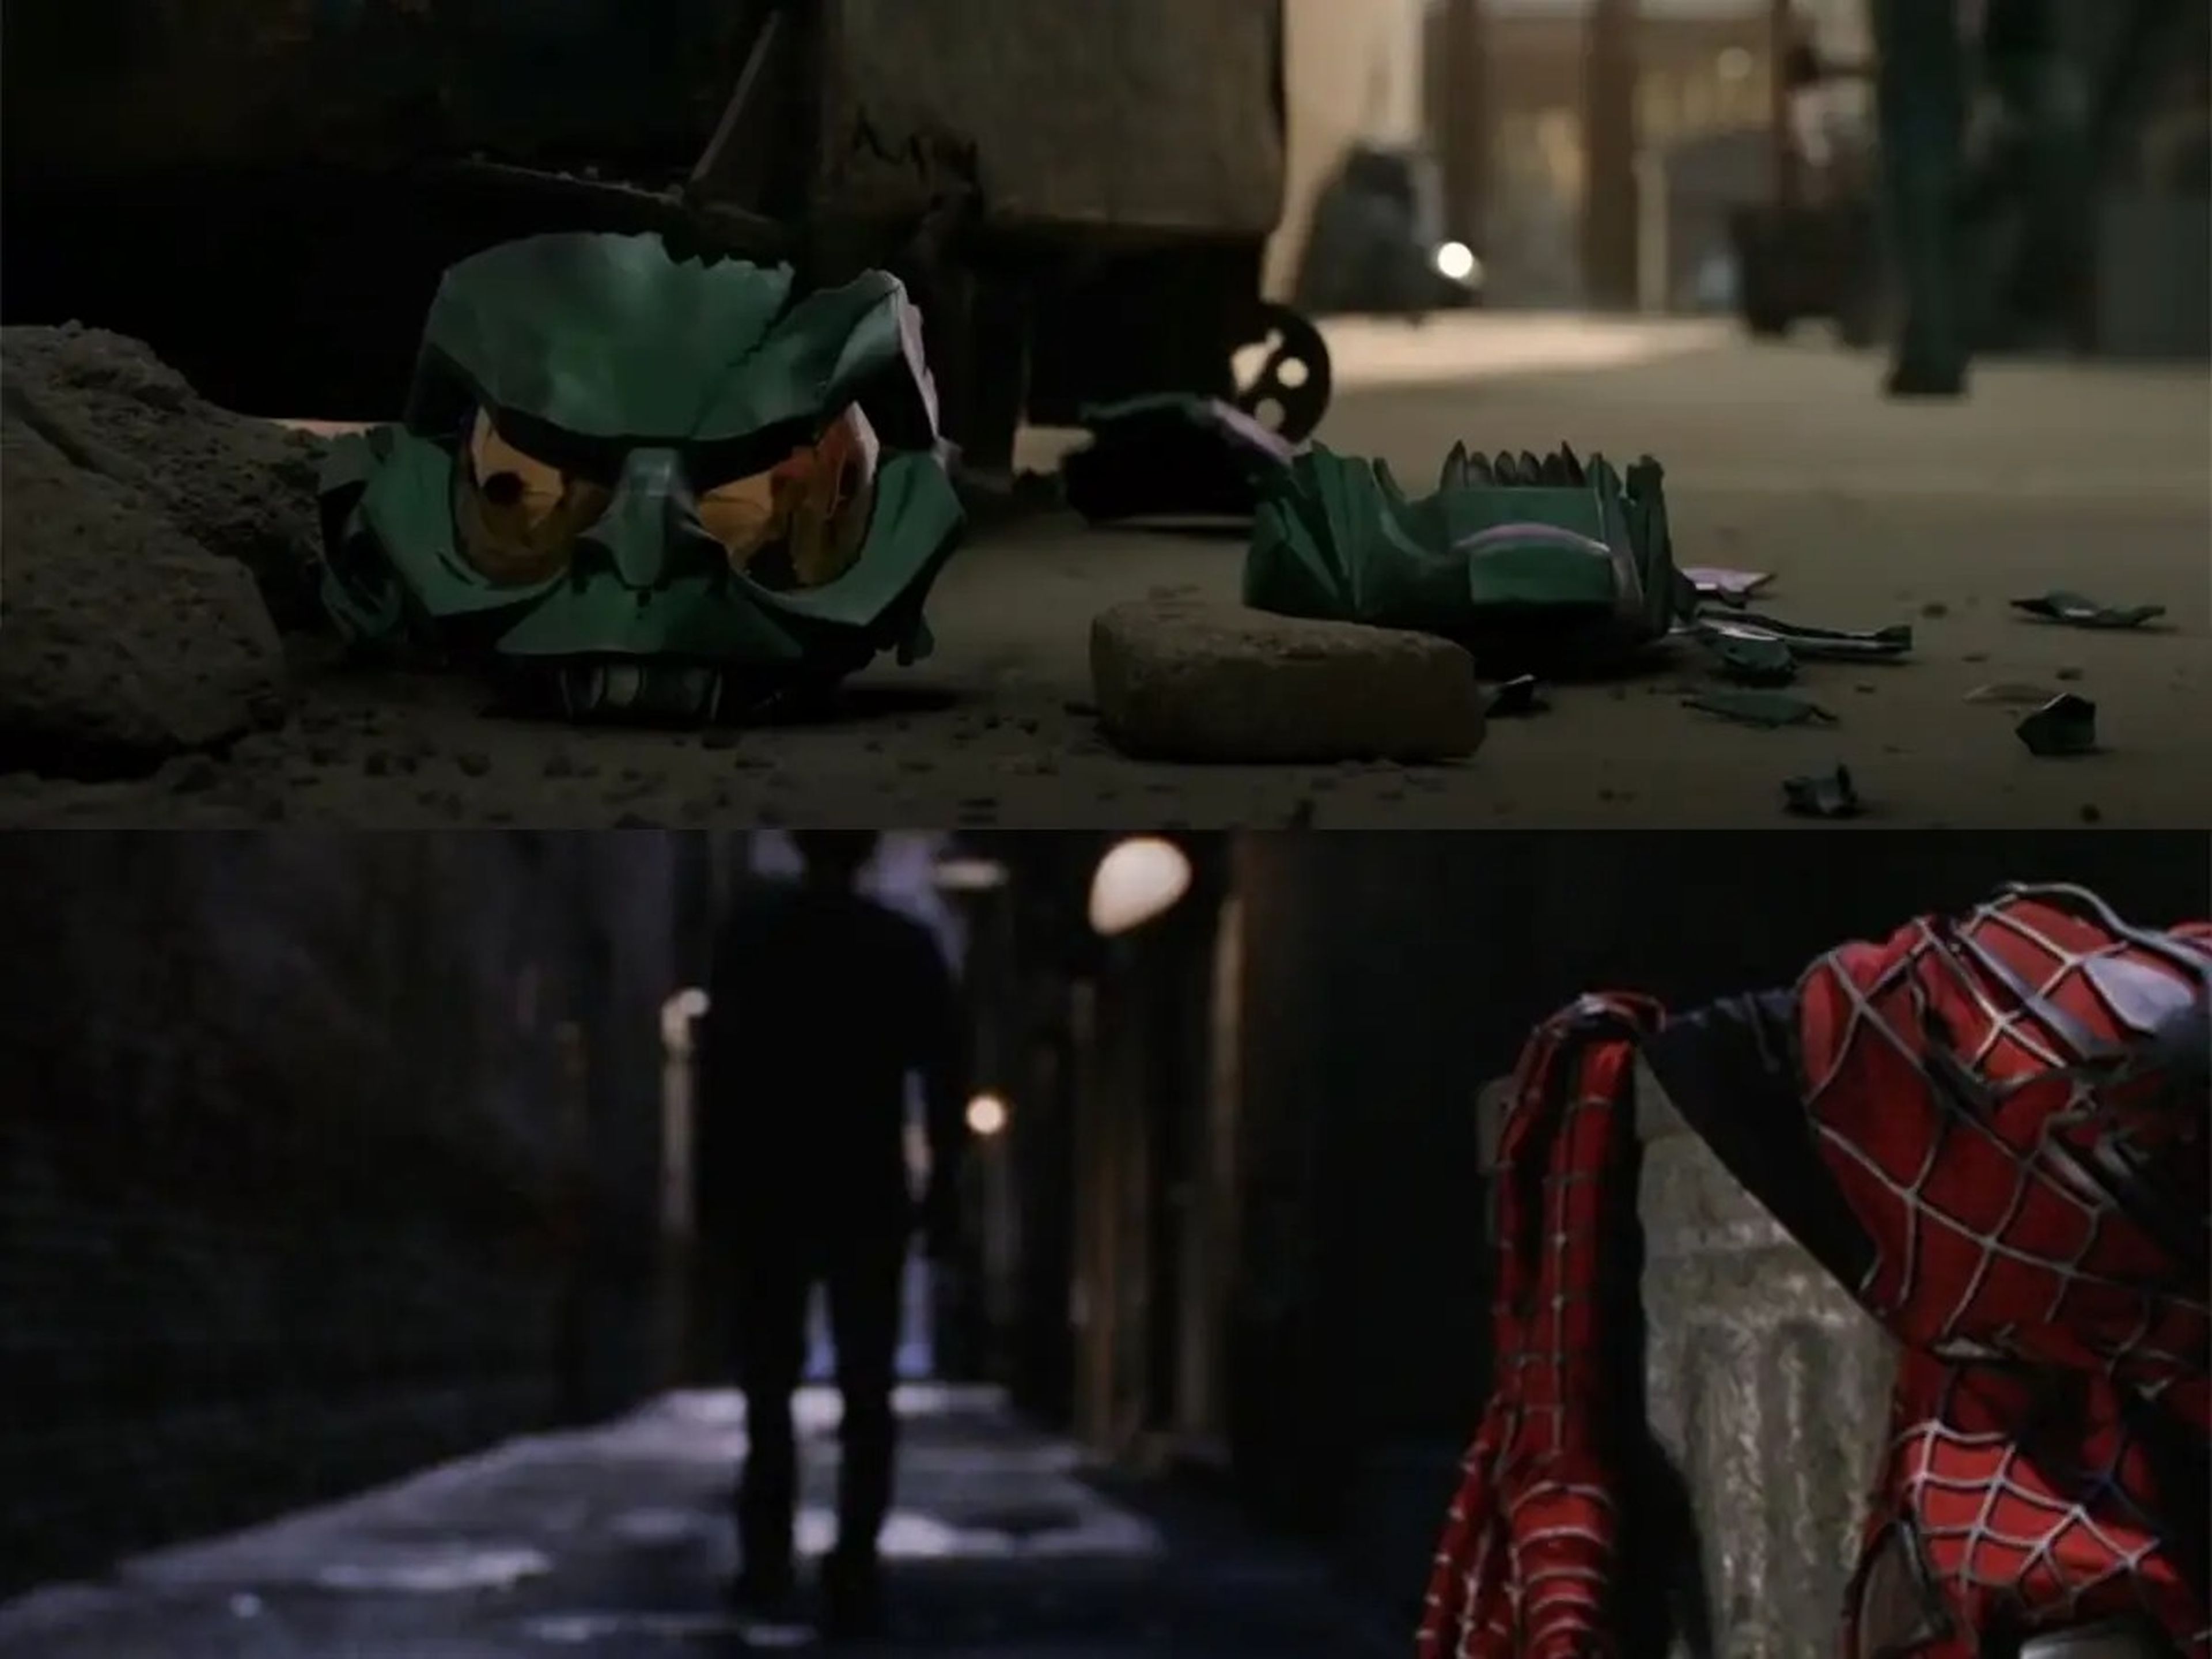 En la imagen superior: Una máscara de duende verde destrozada en un callejón en 'No Way Home'. En la imagen inferior: el traje de Spider-Man de Peter Parker sobre un cubo de basura en un callejón en 'Spider-Man 2'.